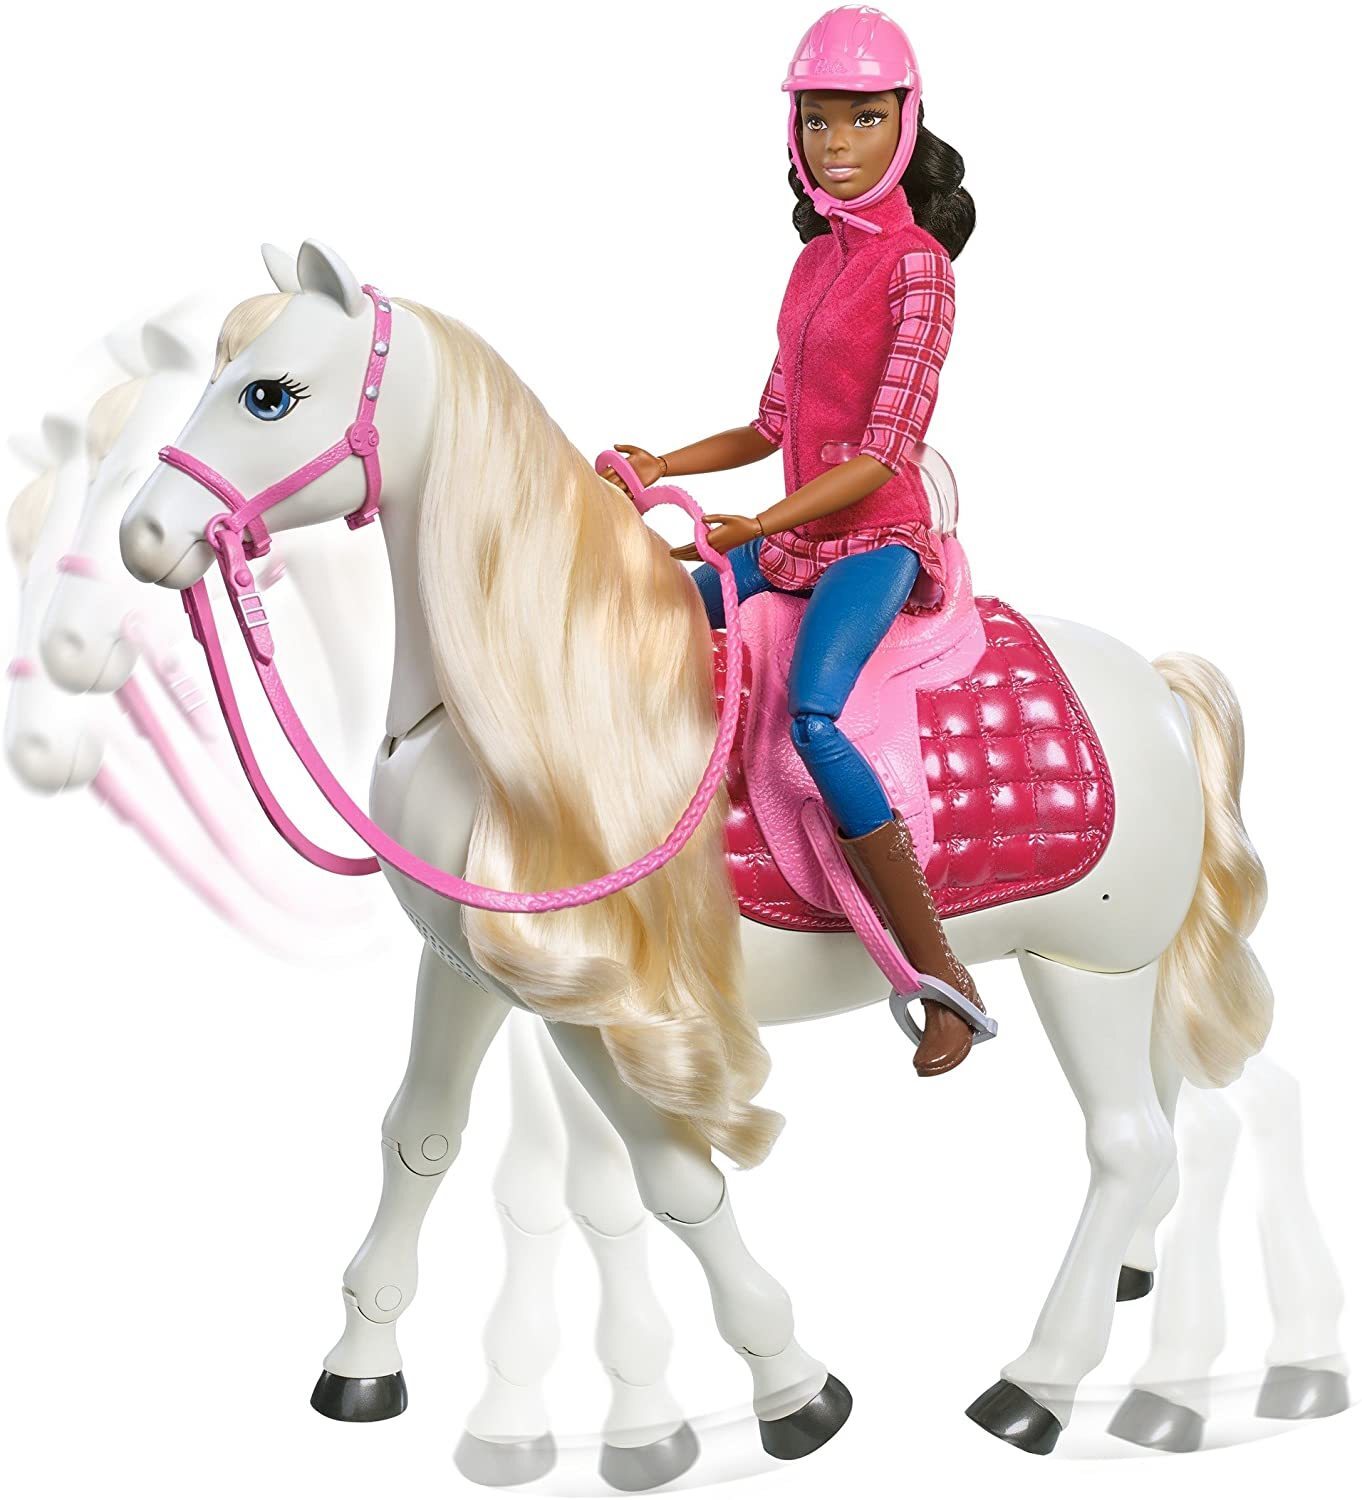 Набор Barbie и лошадь мечты, 29 см, frv36. Кукла Барби Маттел наездница. Игровой набор Barbie наездница с лошадью fxh13. Барби всадница кукла. Игрушка барби купить